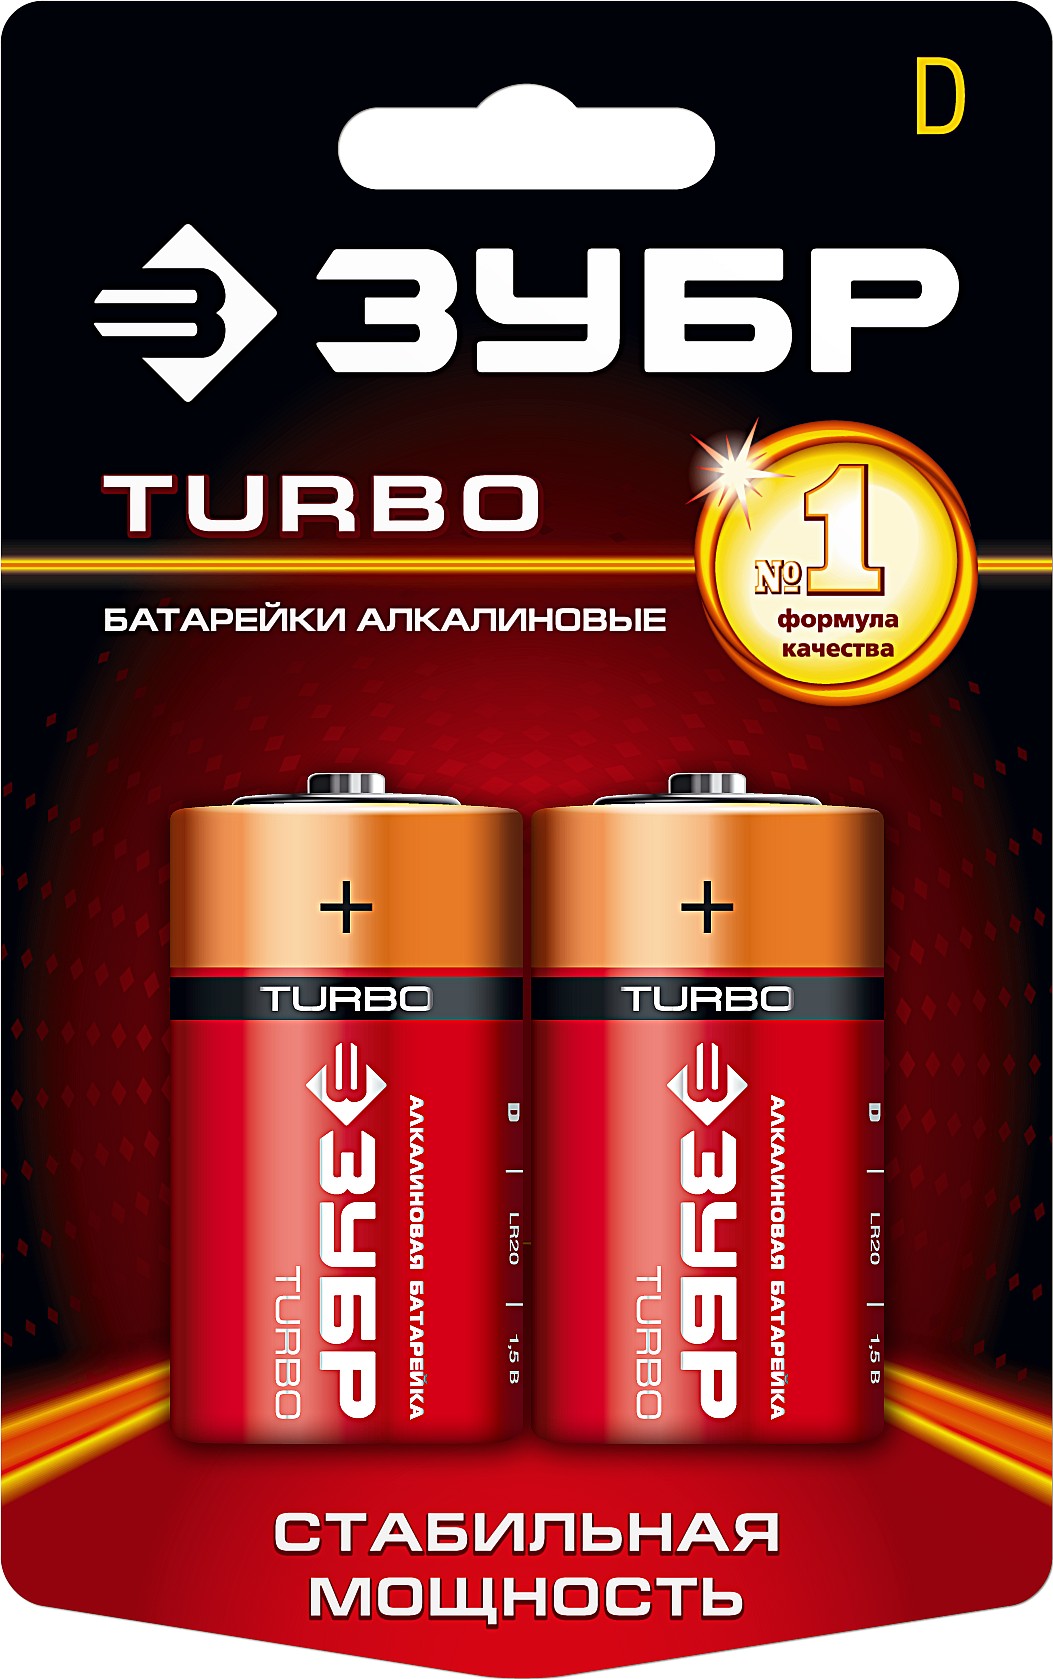 ЗУБР TURBO, D х 2, 1.5 В, алкалиновая батарейка (59217-2C)